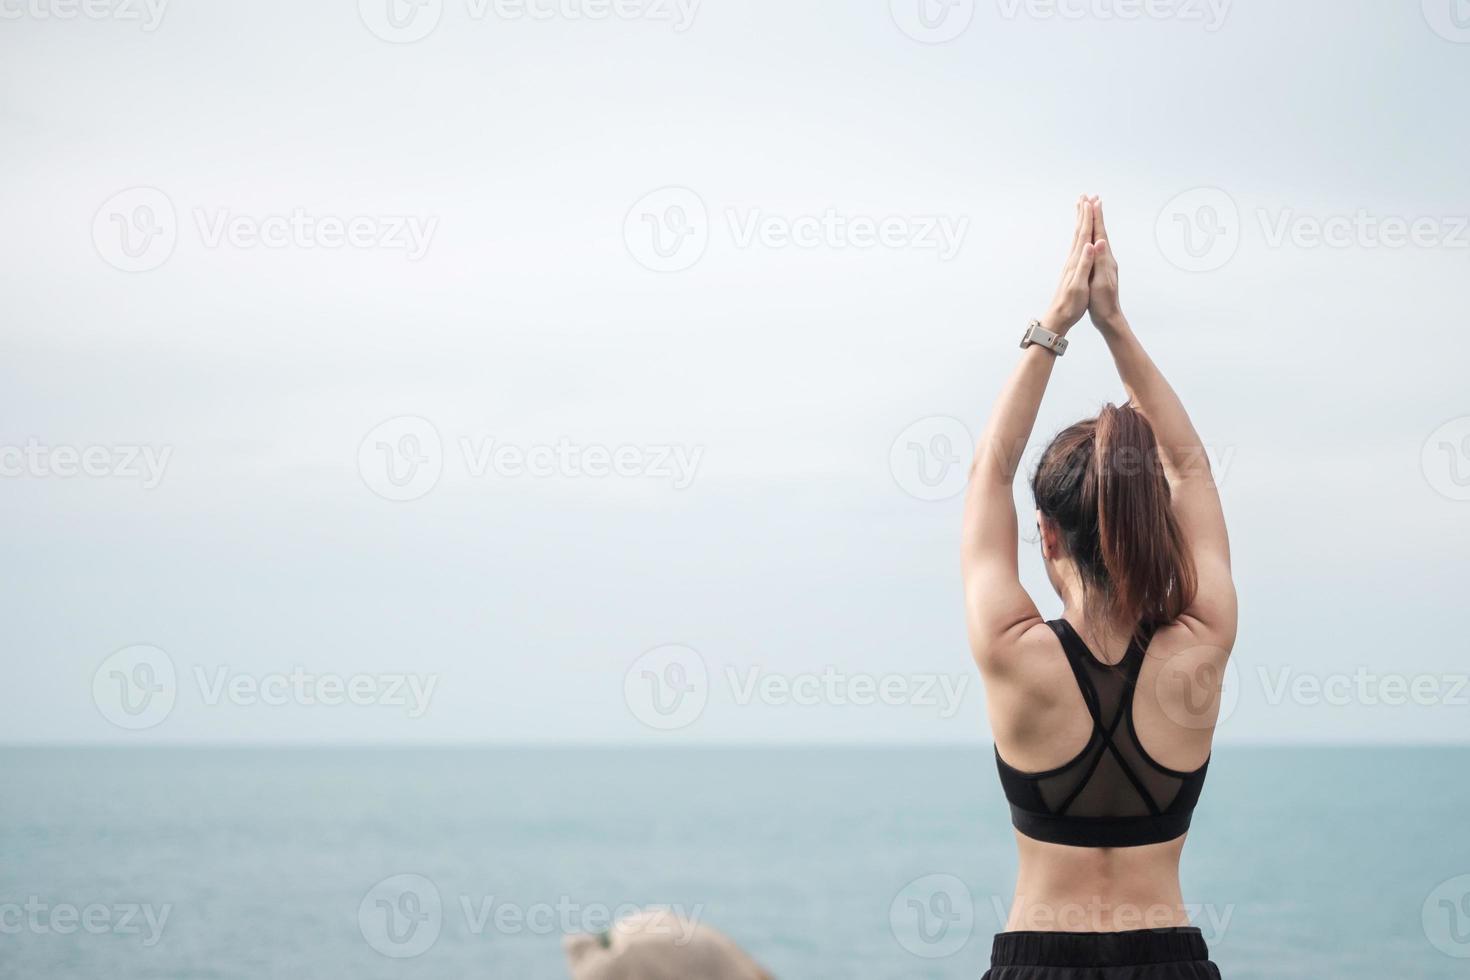 Jeune Femme Adulte En Tenue De Sport Faisant Du Yoga Dans Le Parc En Plein  Air Femme En Bonne Santé Assise Sur L'herbe Et La Méditation Avec La Pose  De Lotus Dans